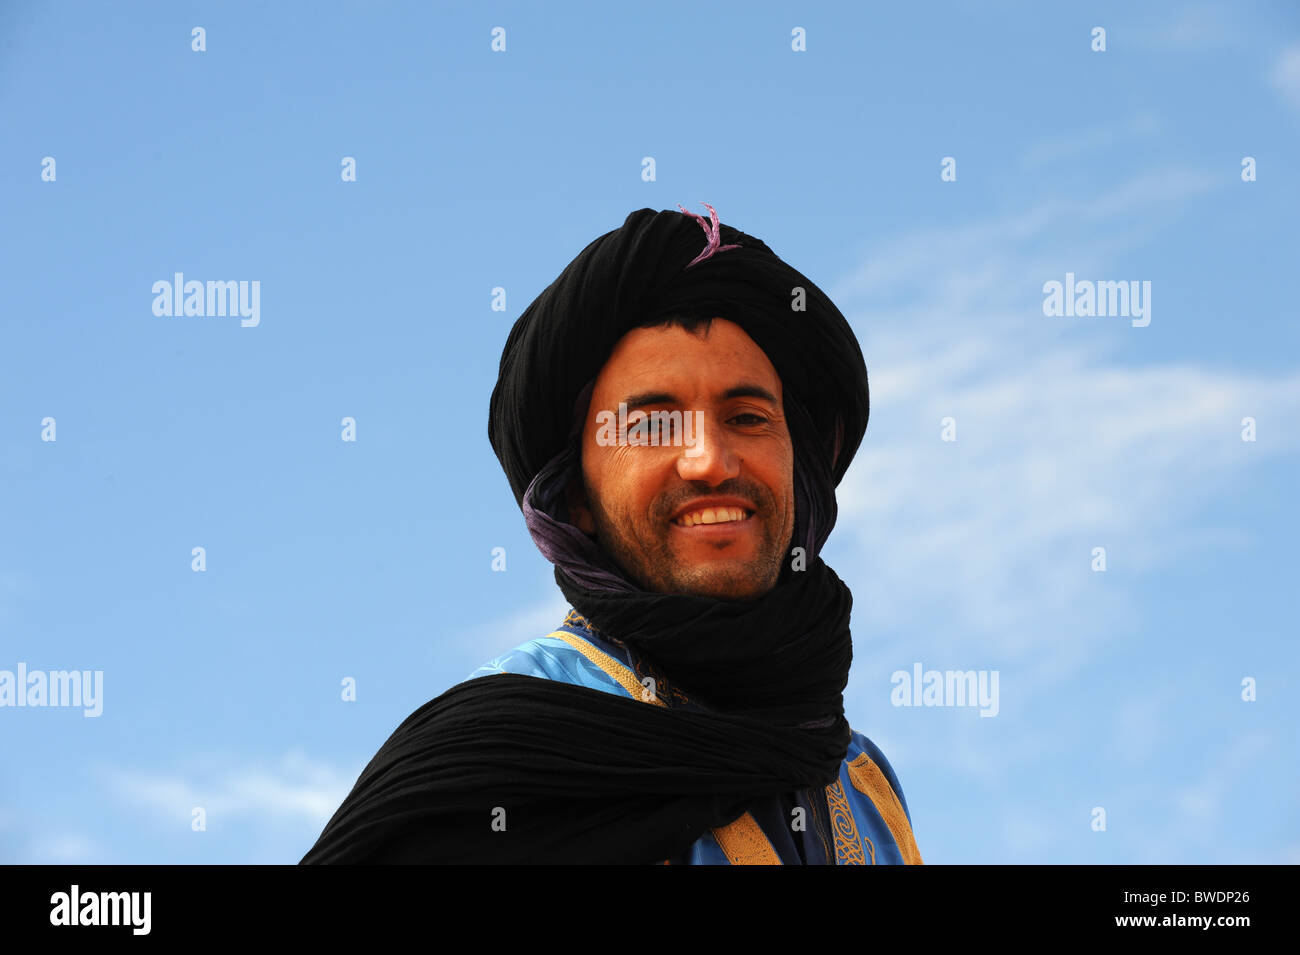 Berber tribesman in the Sahara desert in Southern Morocco Stock Photo